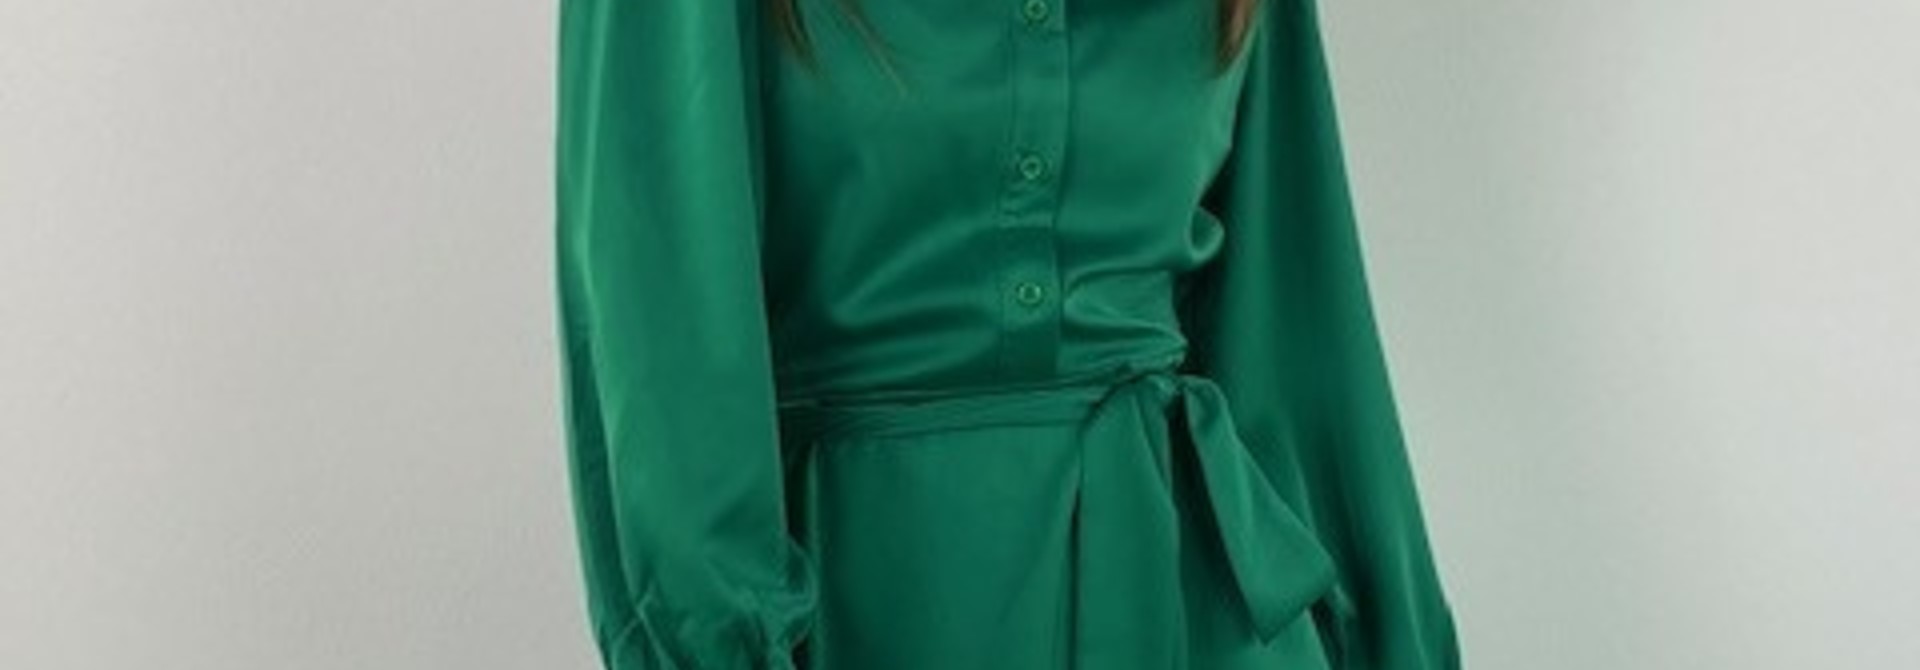 Joyette atin polo dress Green